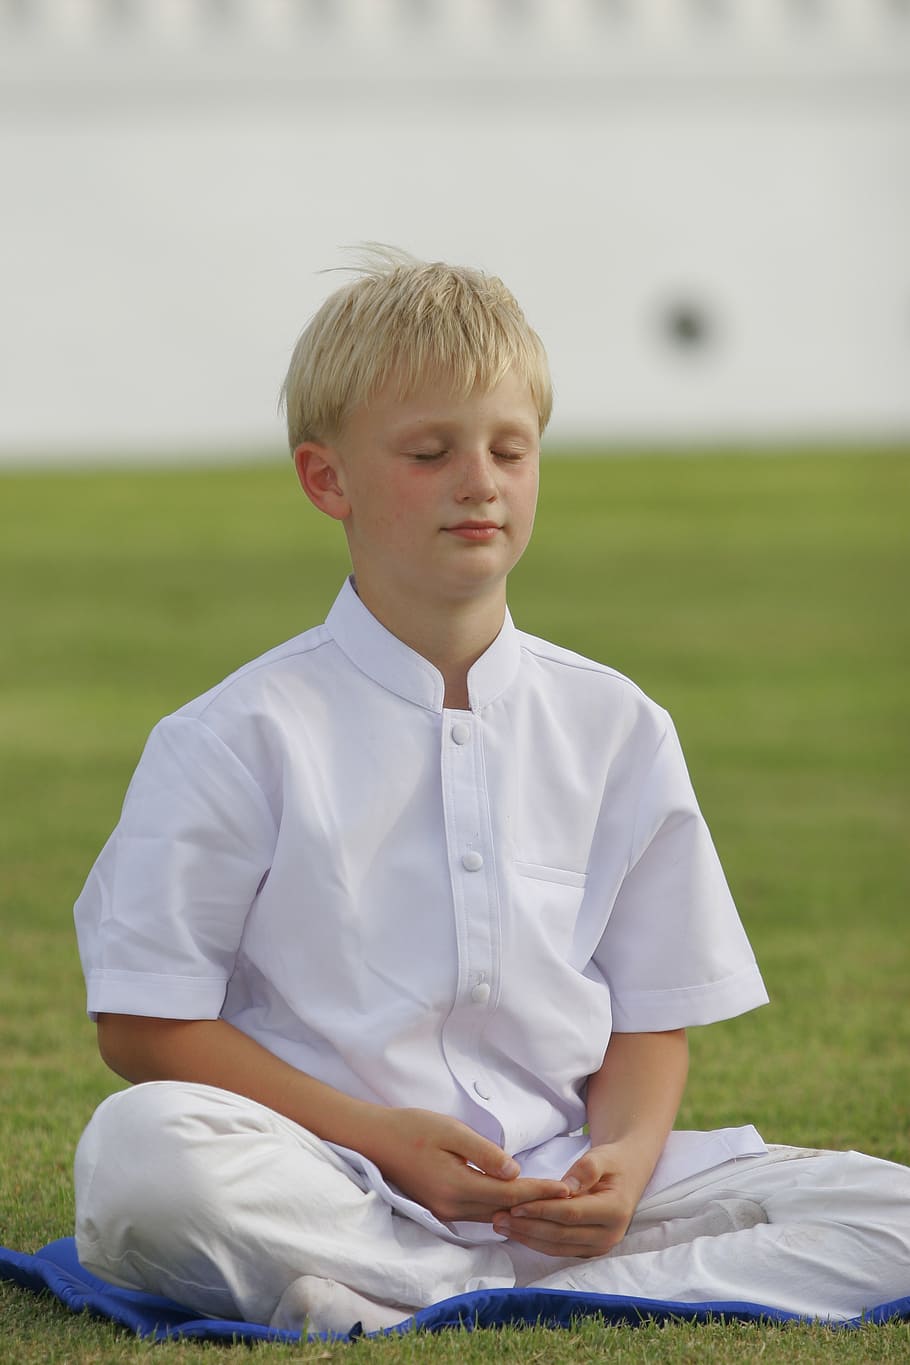 少年, 身に着けている, 白, 衣装, 瞑想, 緑, 芝生, 仏教, ワット, 寺院